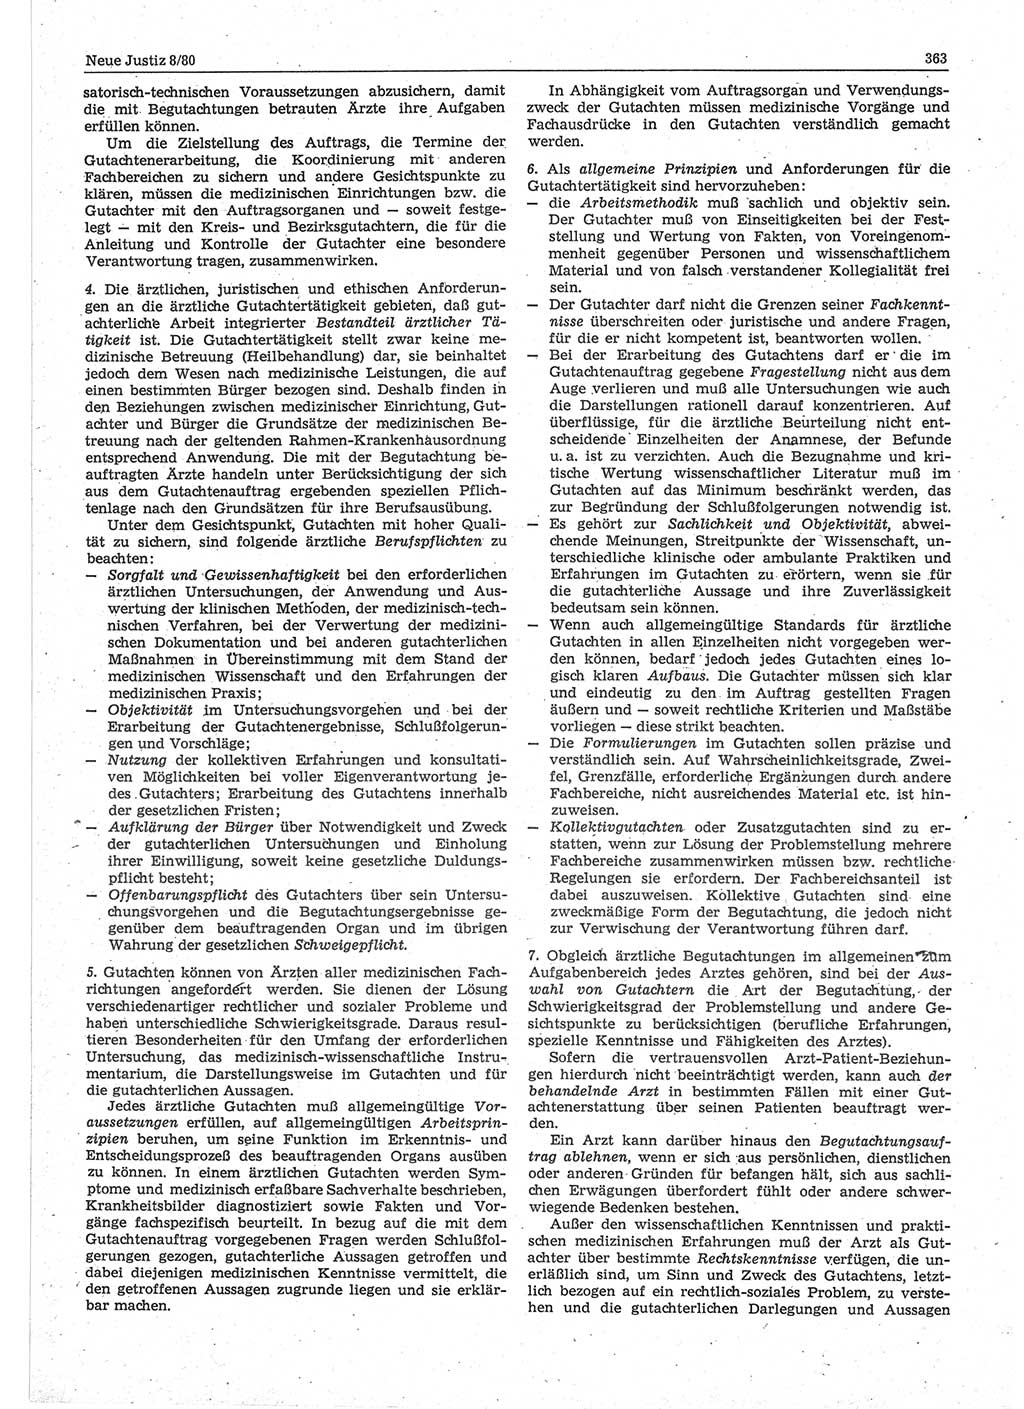 Neue Justiz (NJ), Zeitschrift für sozialistisches Recht und Gesetzlichkeit [Deutsche Demokratische Republik (DDR)], 34. Jahrgang 1980, Seite 363 (NJ DDR 1980, S. 363)